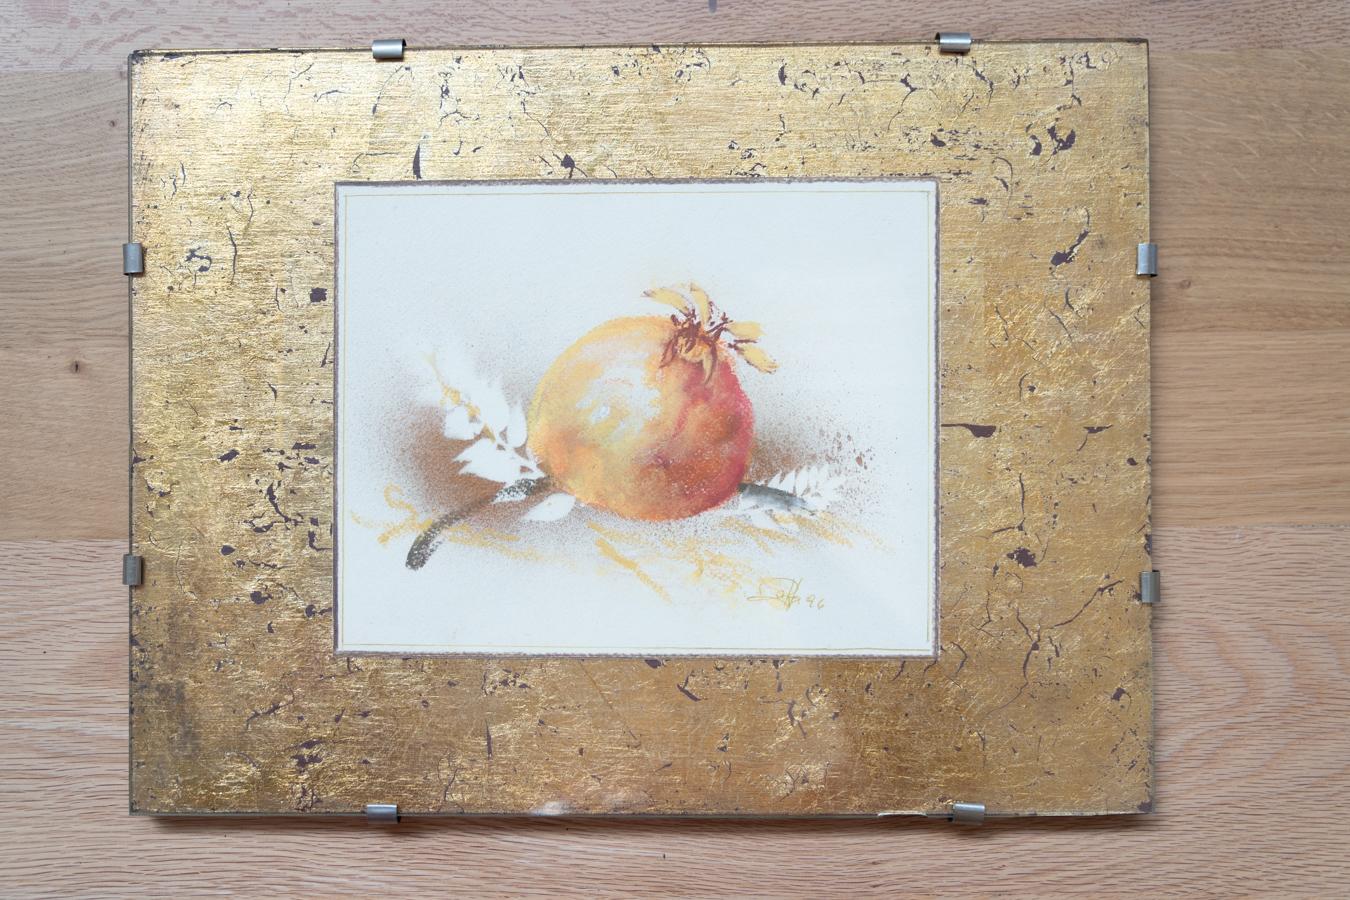 Paar Aquarelle und Blattgolddrucke, Natur, 1970-1980
FARBE                                     Orange, braun, schwarz, gelb, gold
MATERIALIEN                               Glas, Holz, Blattgold
BEDINGUNGEN                             Gut
MASSNAHMEN 